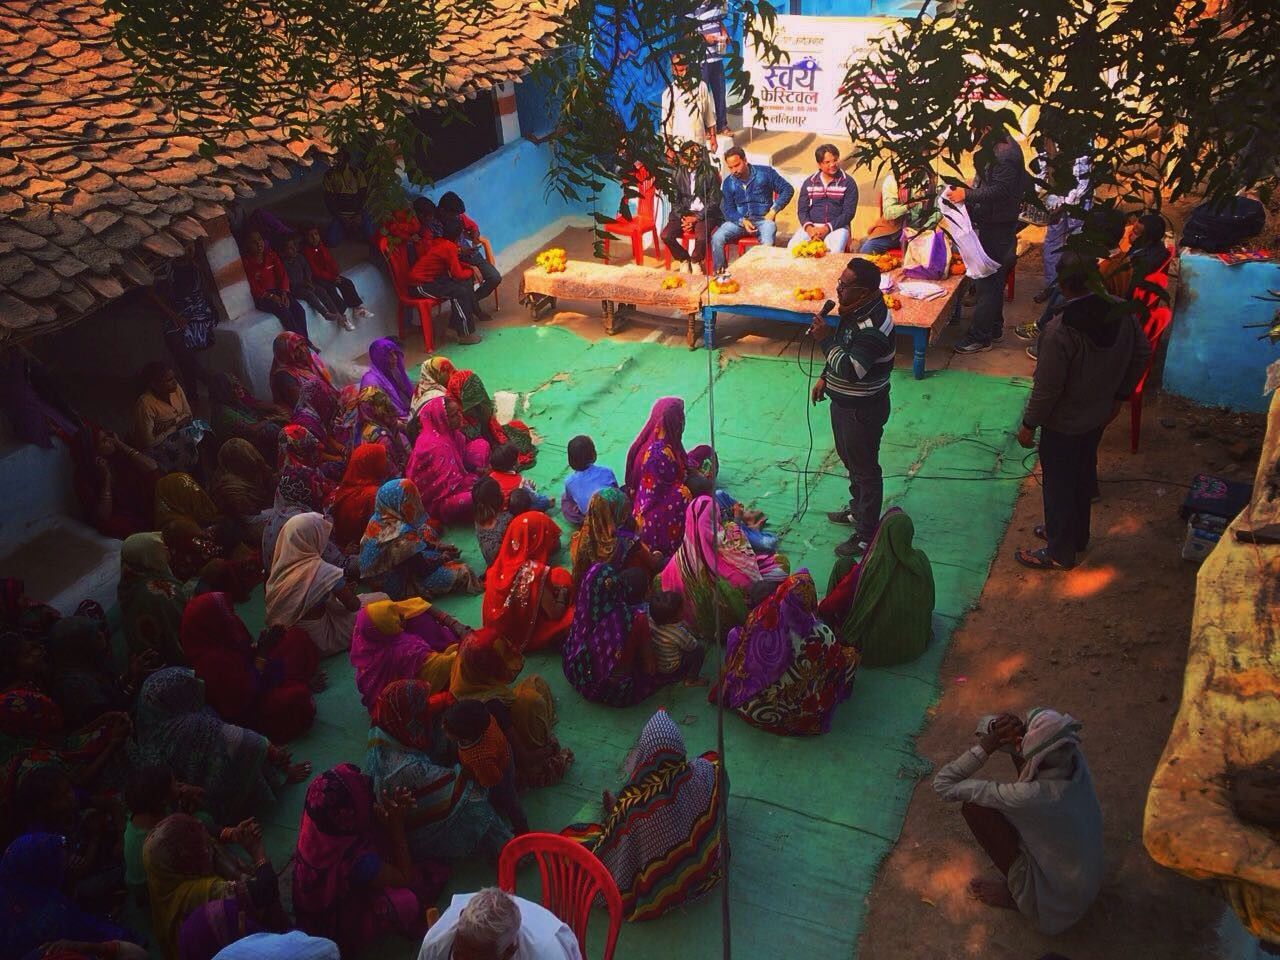 स्वयं फेस्टिवल: ‘उन दिनों’ का टैबू तोड़ने की कोशिश. ललितपुर के सिंधवाहा में गांव की महिलाओं ने की माहवारी पर चर्चा